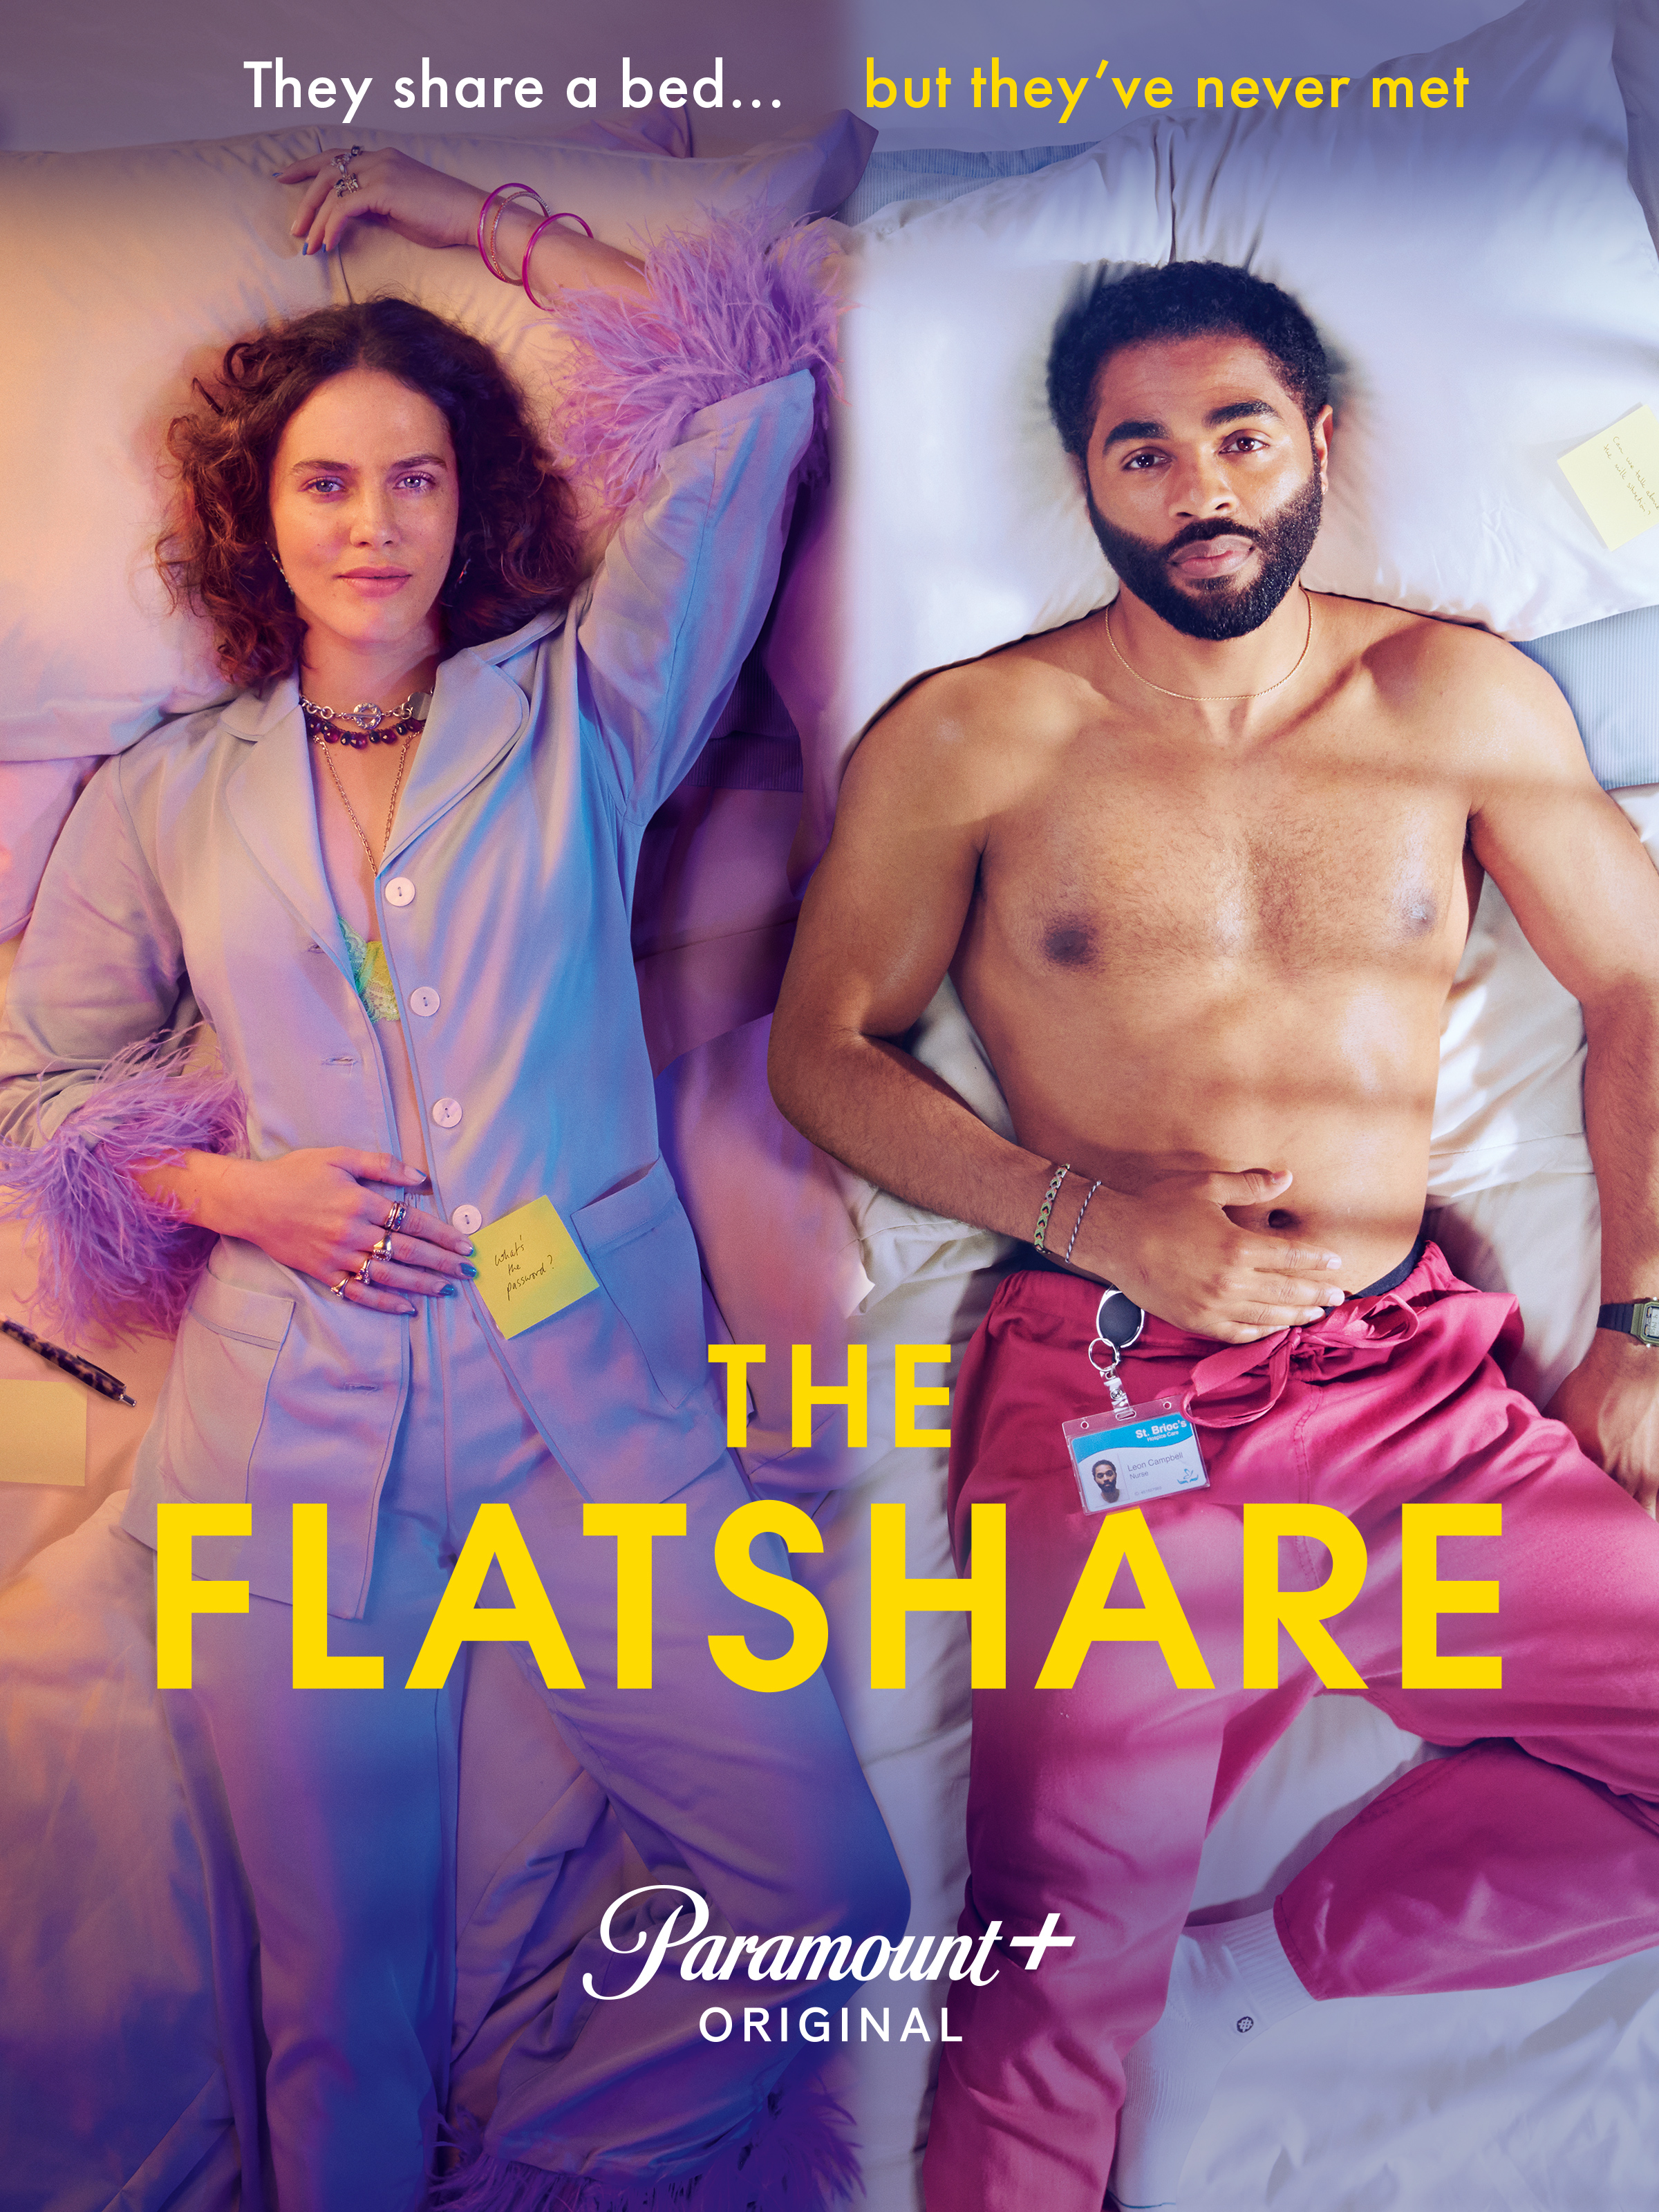 The Flatshare Season 1 Episode 4